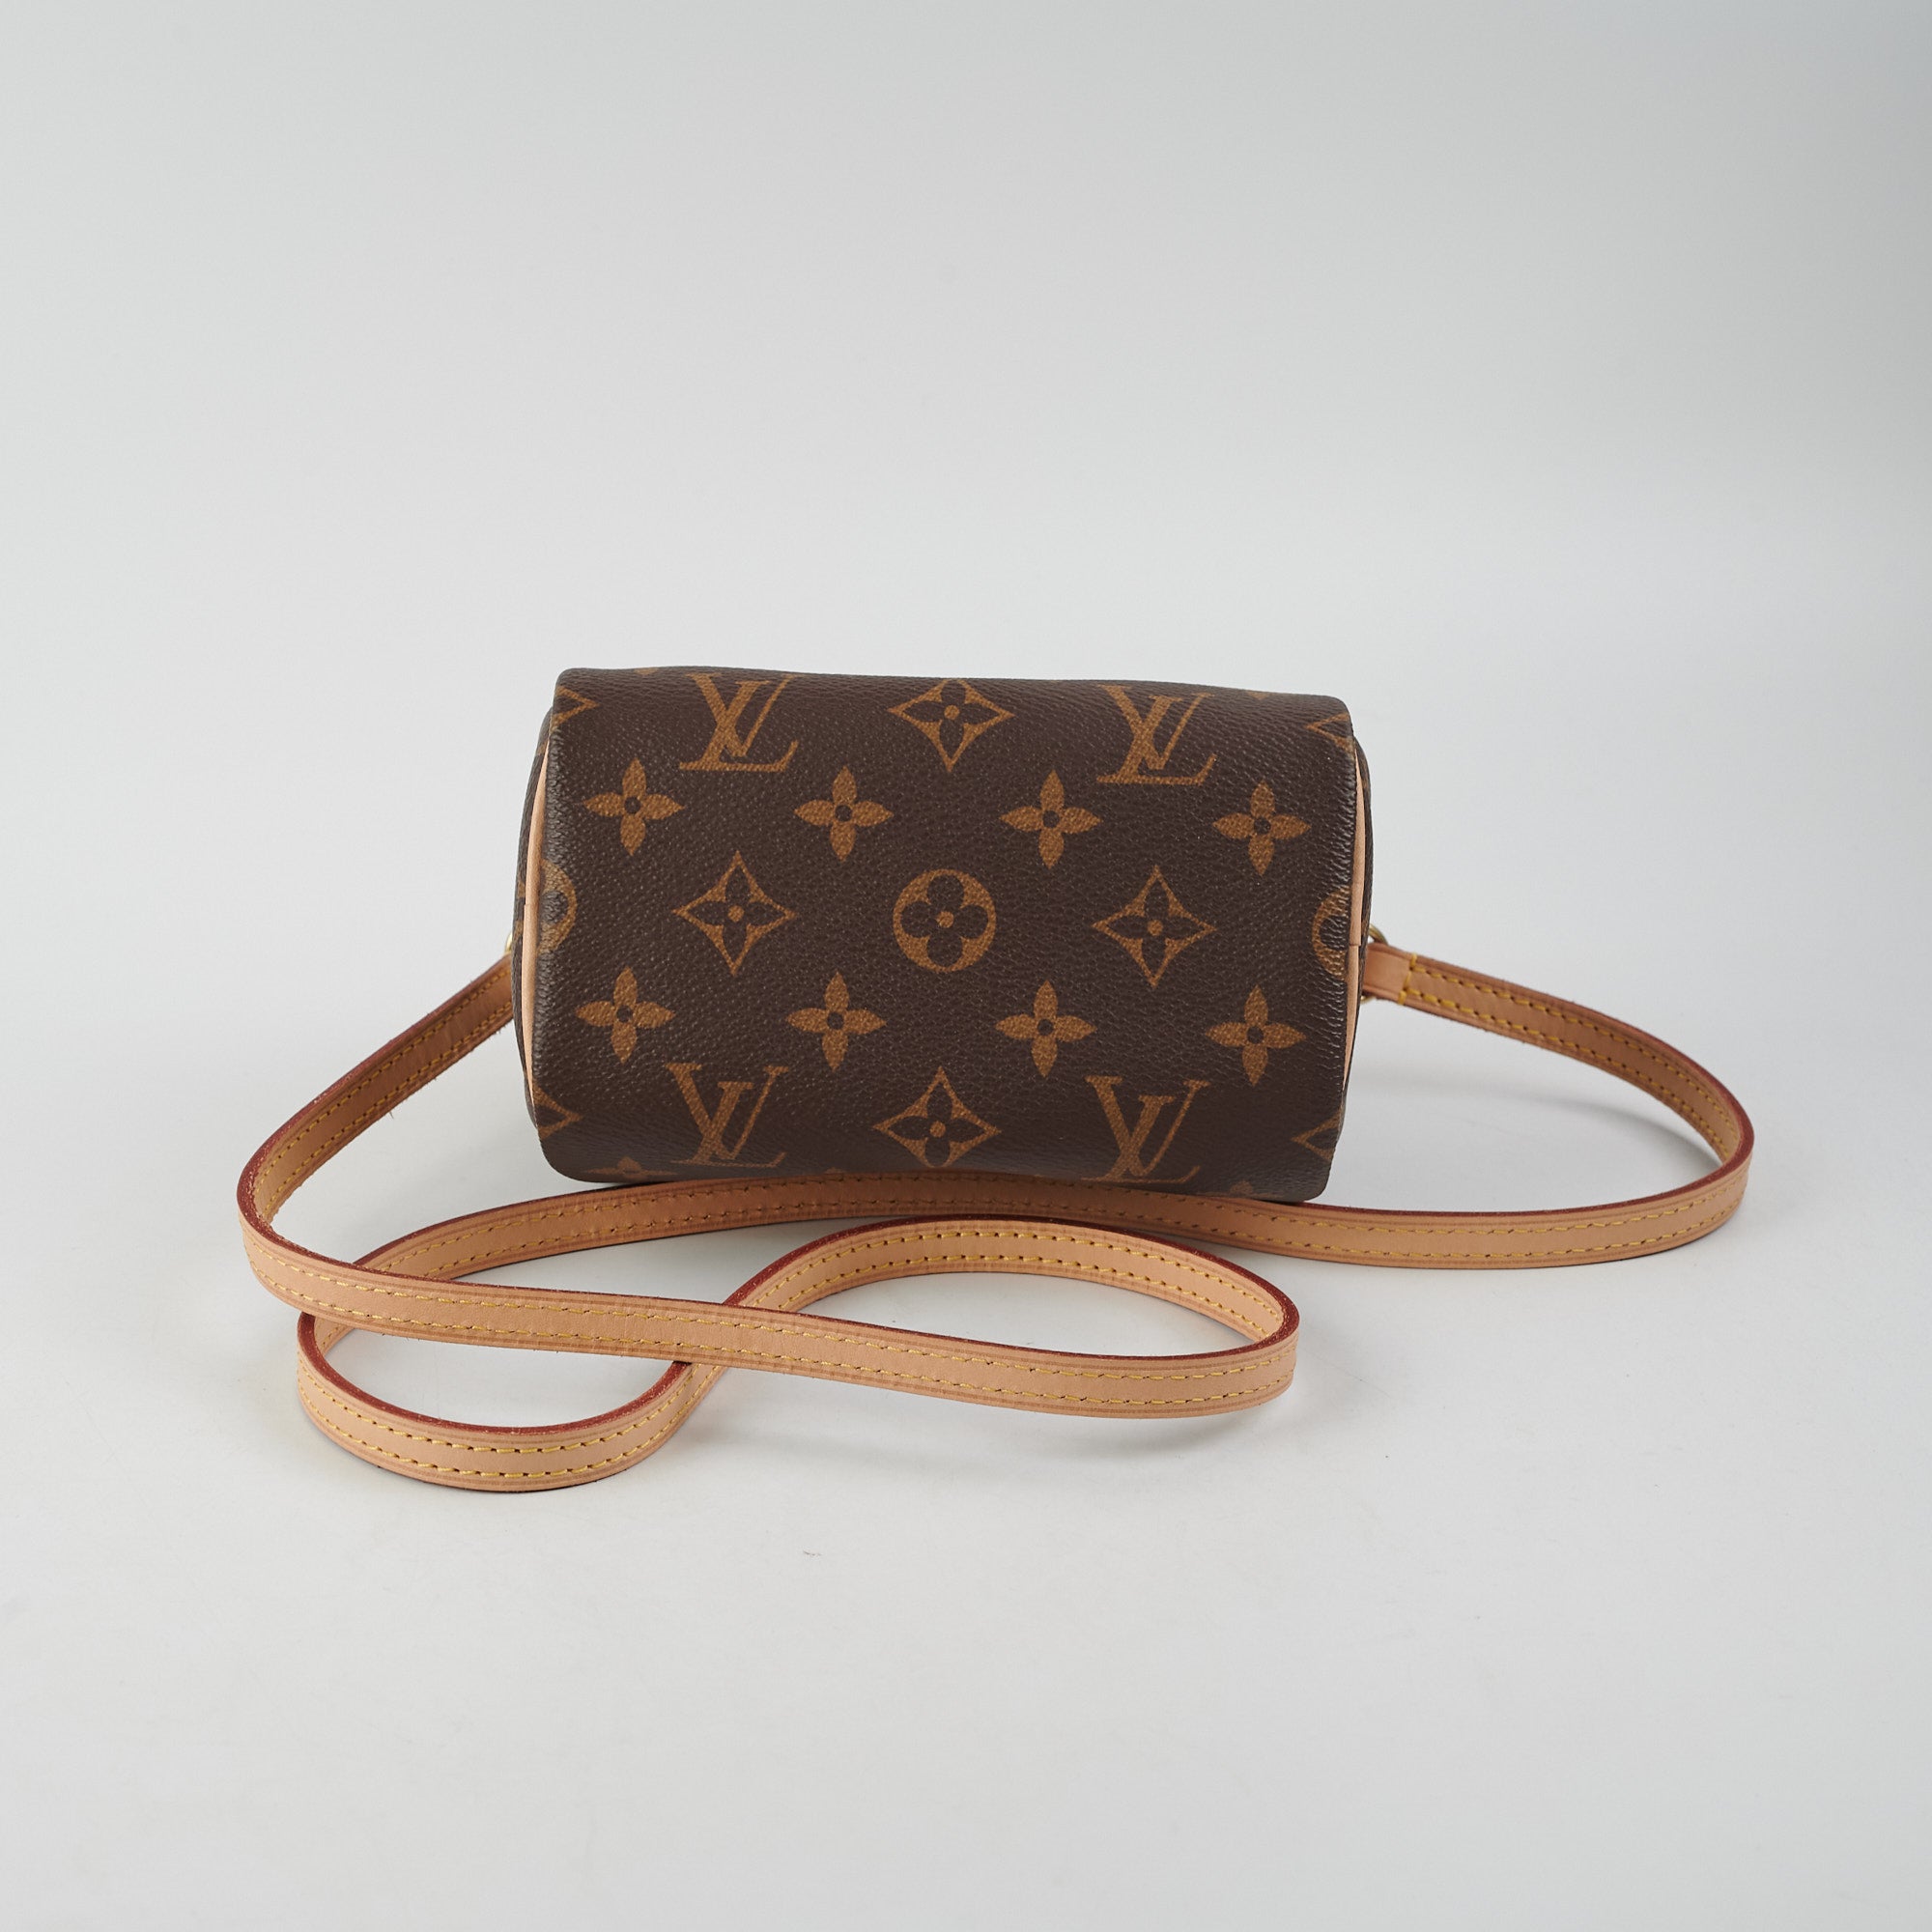 Louis Vuitton nano speedy – Beccas Bags